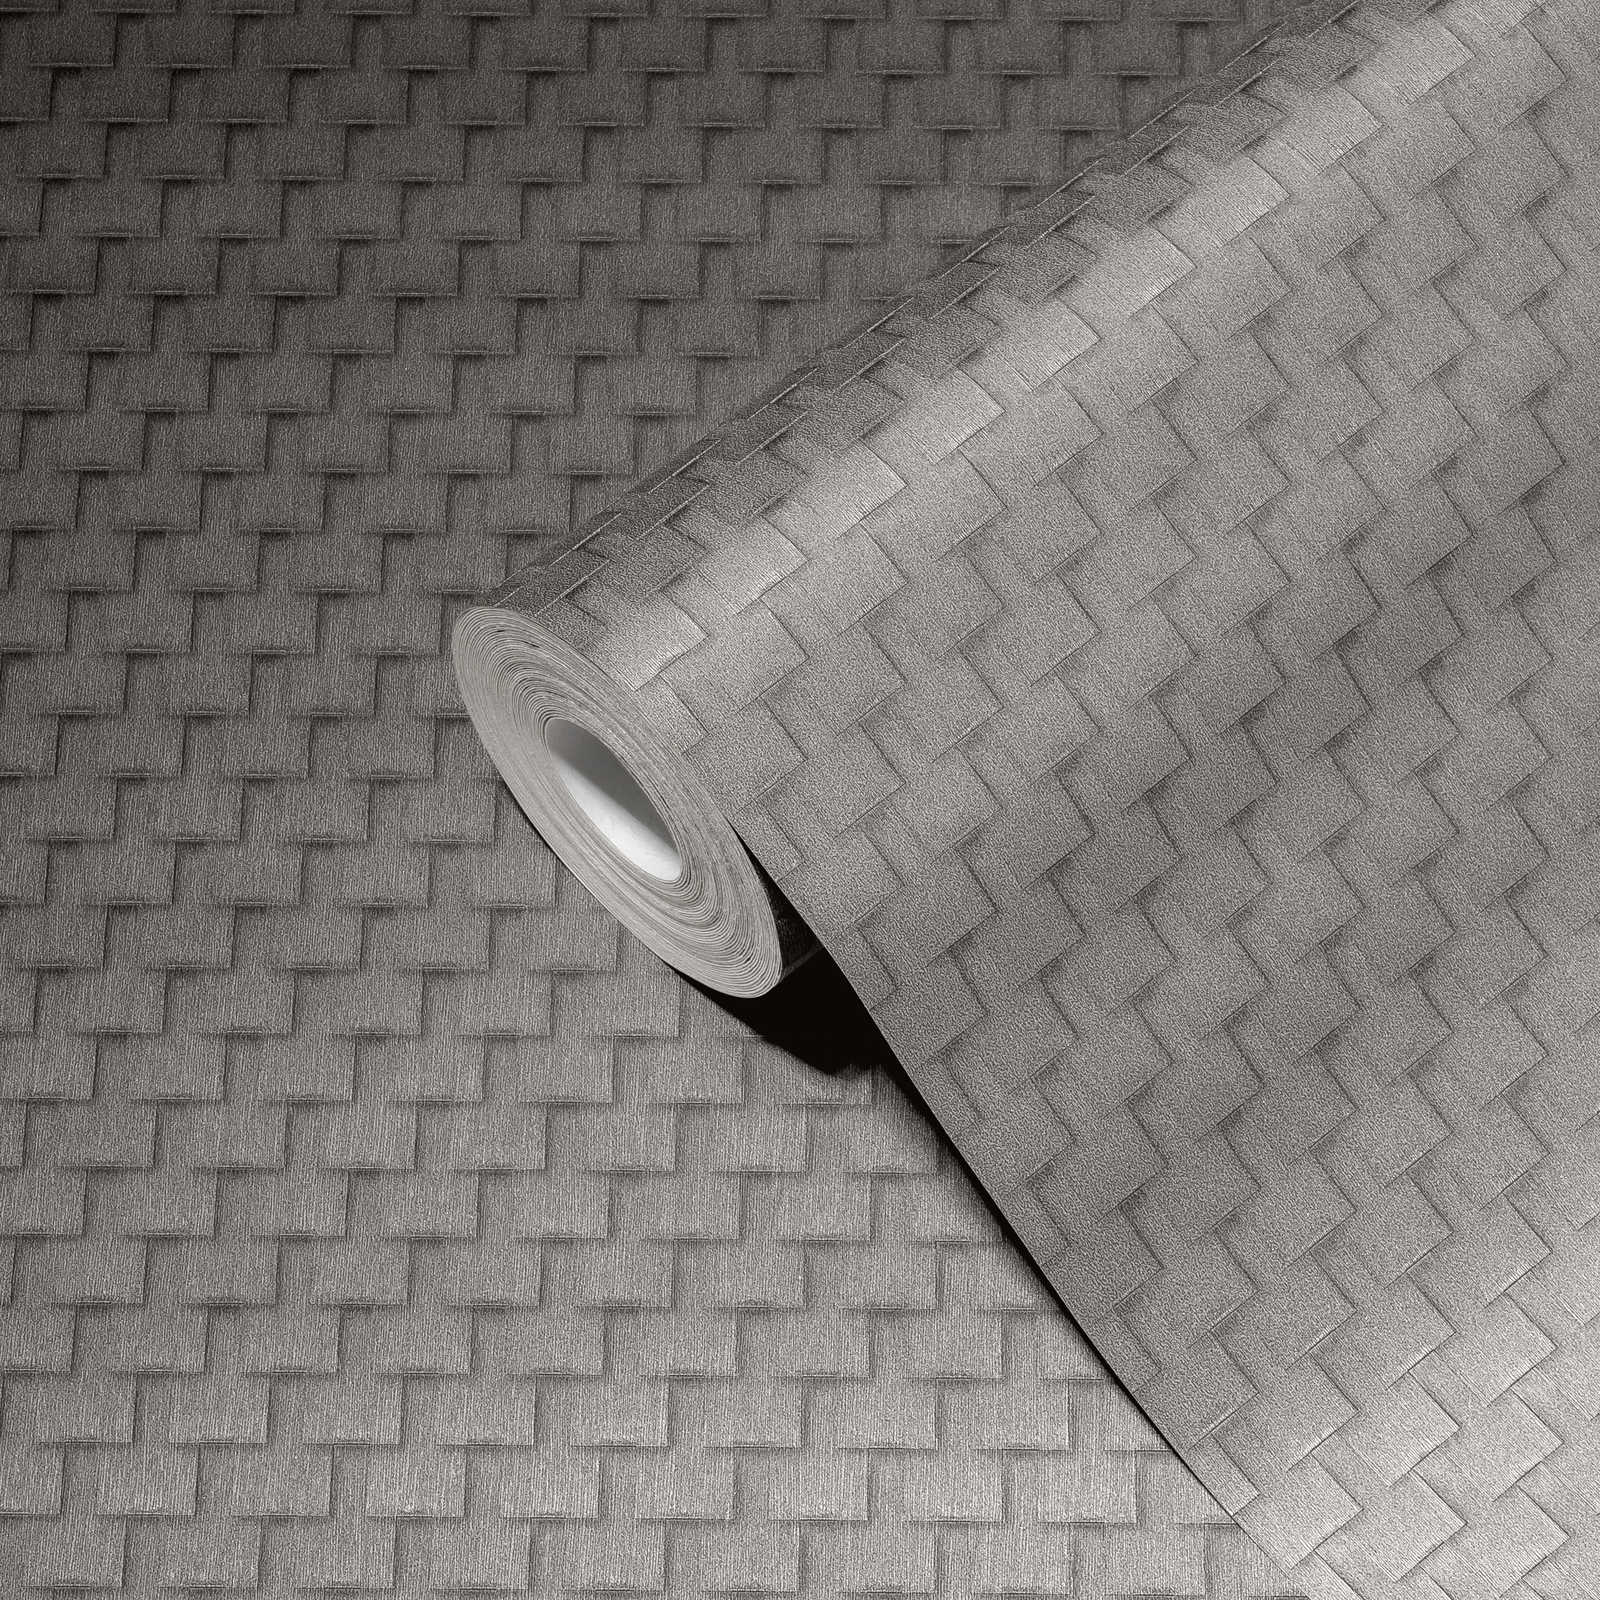             Gemusterte Tapete mit Facetten-Design und 3D-Effekt – Grau, Silber
        